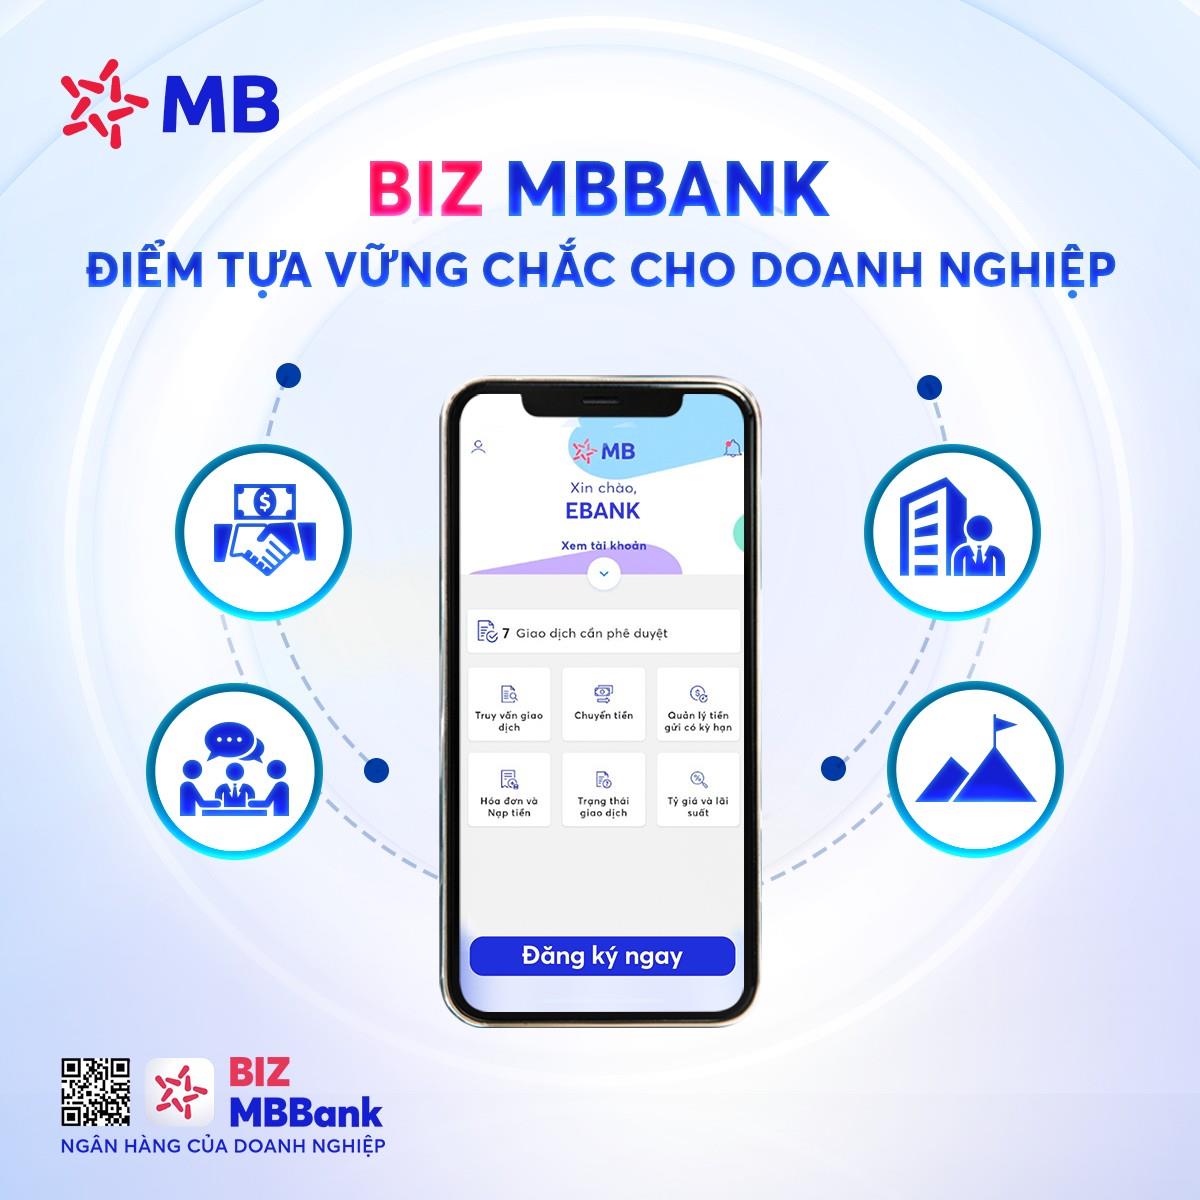 BIZ MBBank - Ứng dụng ngân hàng đáp ứng toàn diện nhu cầu của doanh nghiệp - Ảnh 1.